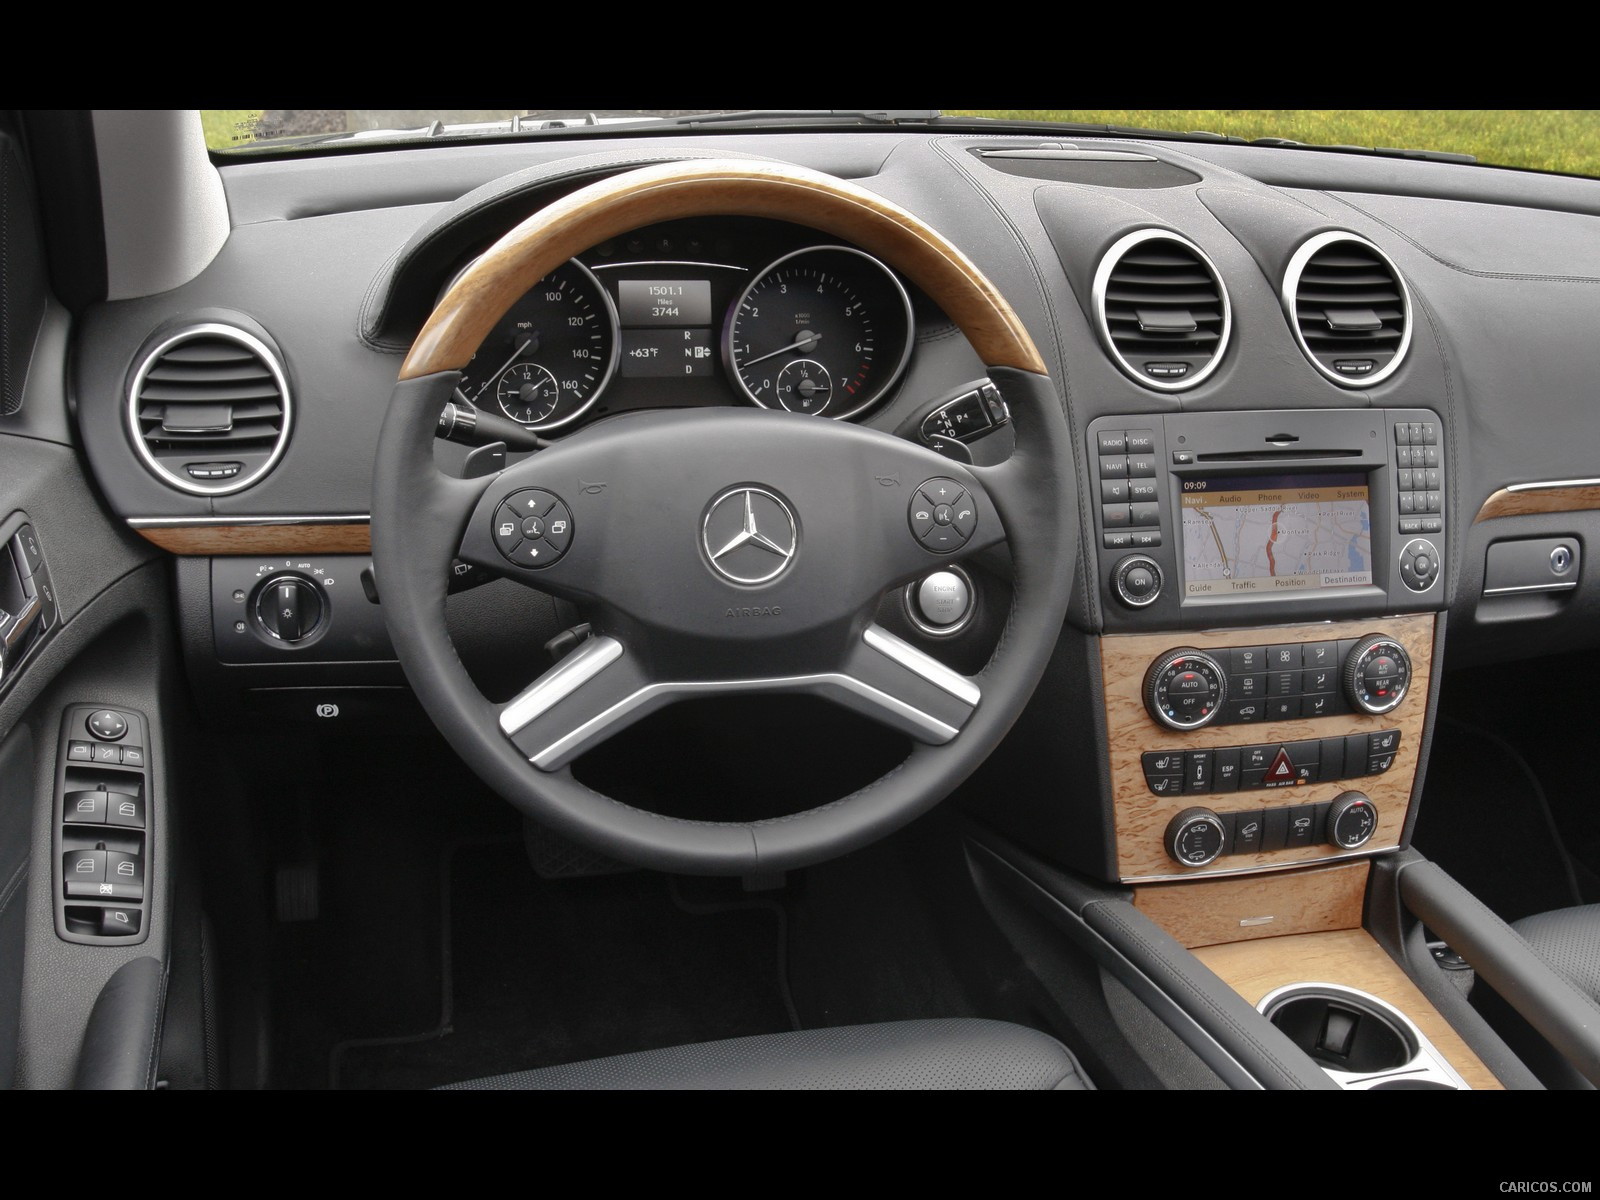 2010 Mercedes-Benz GL550 - Interior, #63 of 112